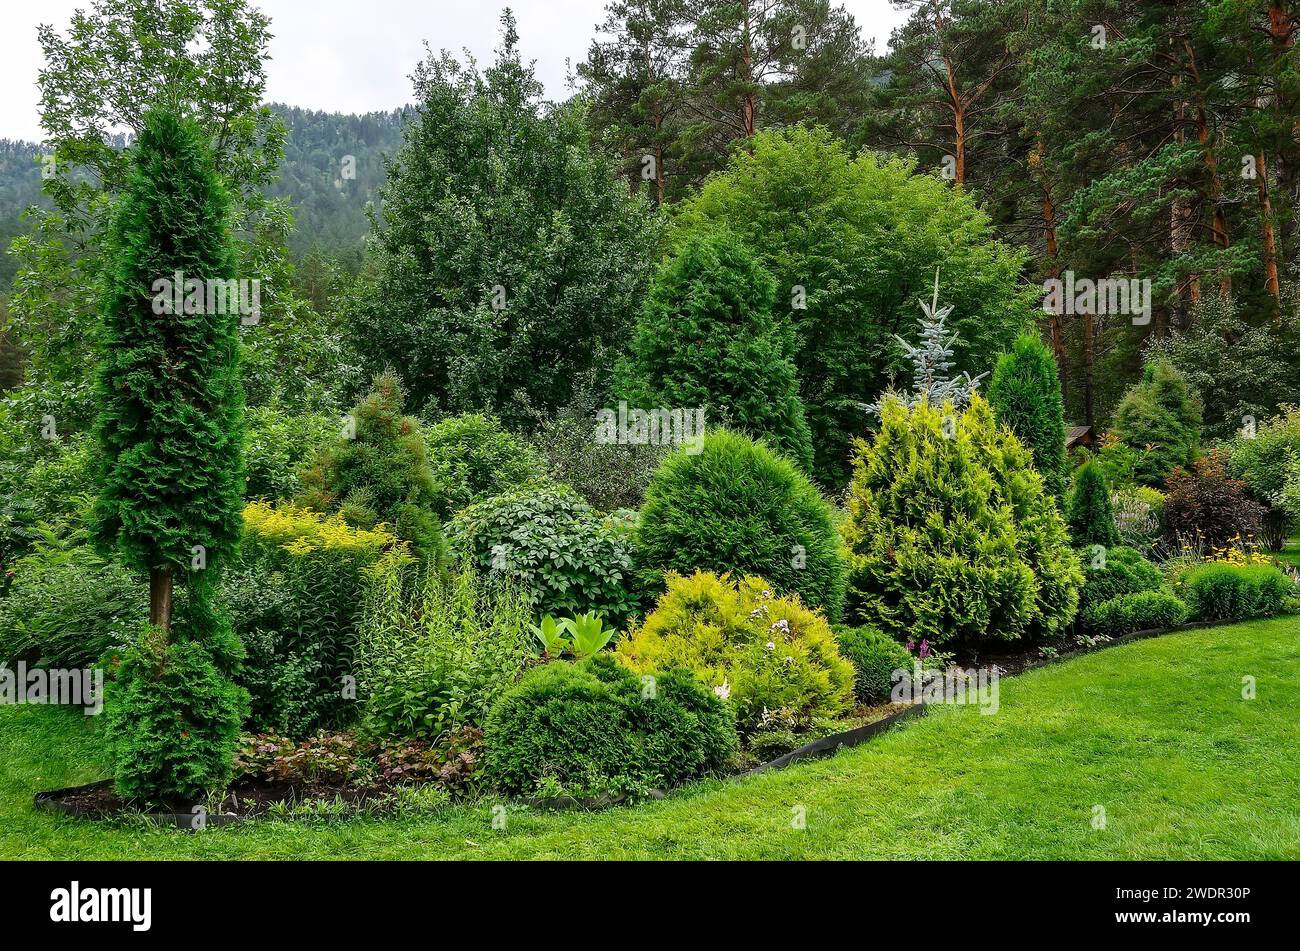 Gemütliche Ecke des Sommergartens in den Bergen, wo verschiedene Laub- und Nadelpflanzen mit verschiedenen Texturen und Farben des Laubs gemischt wurden. Landscapin Stockfoto